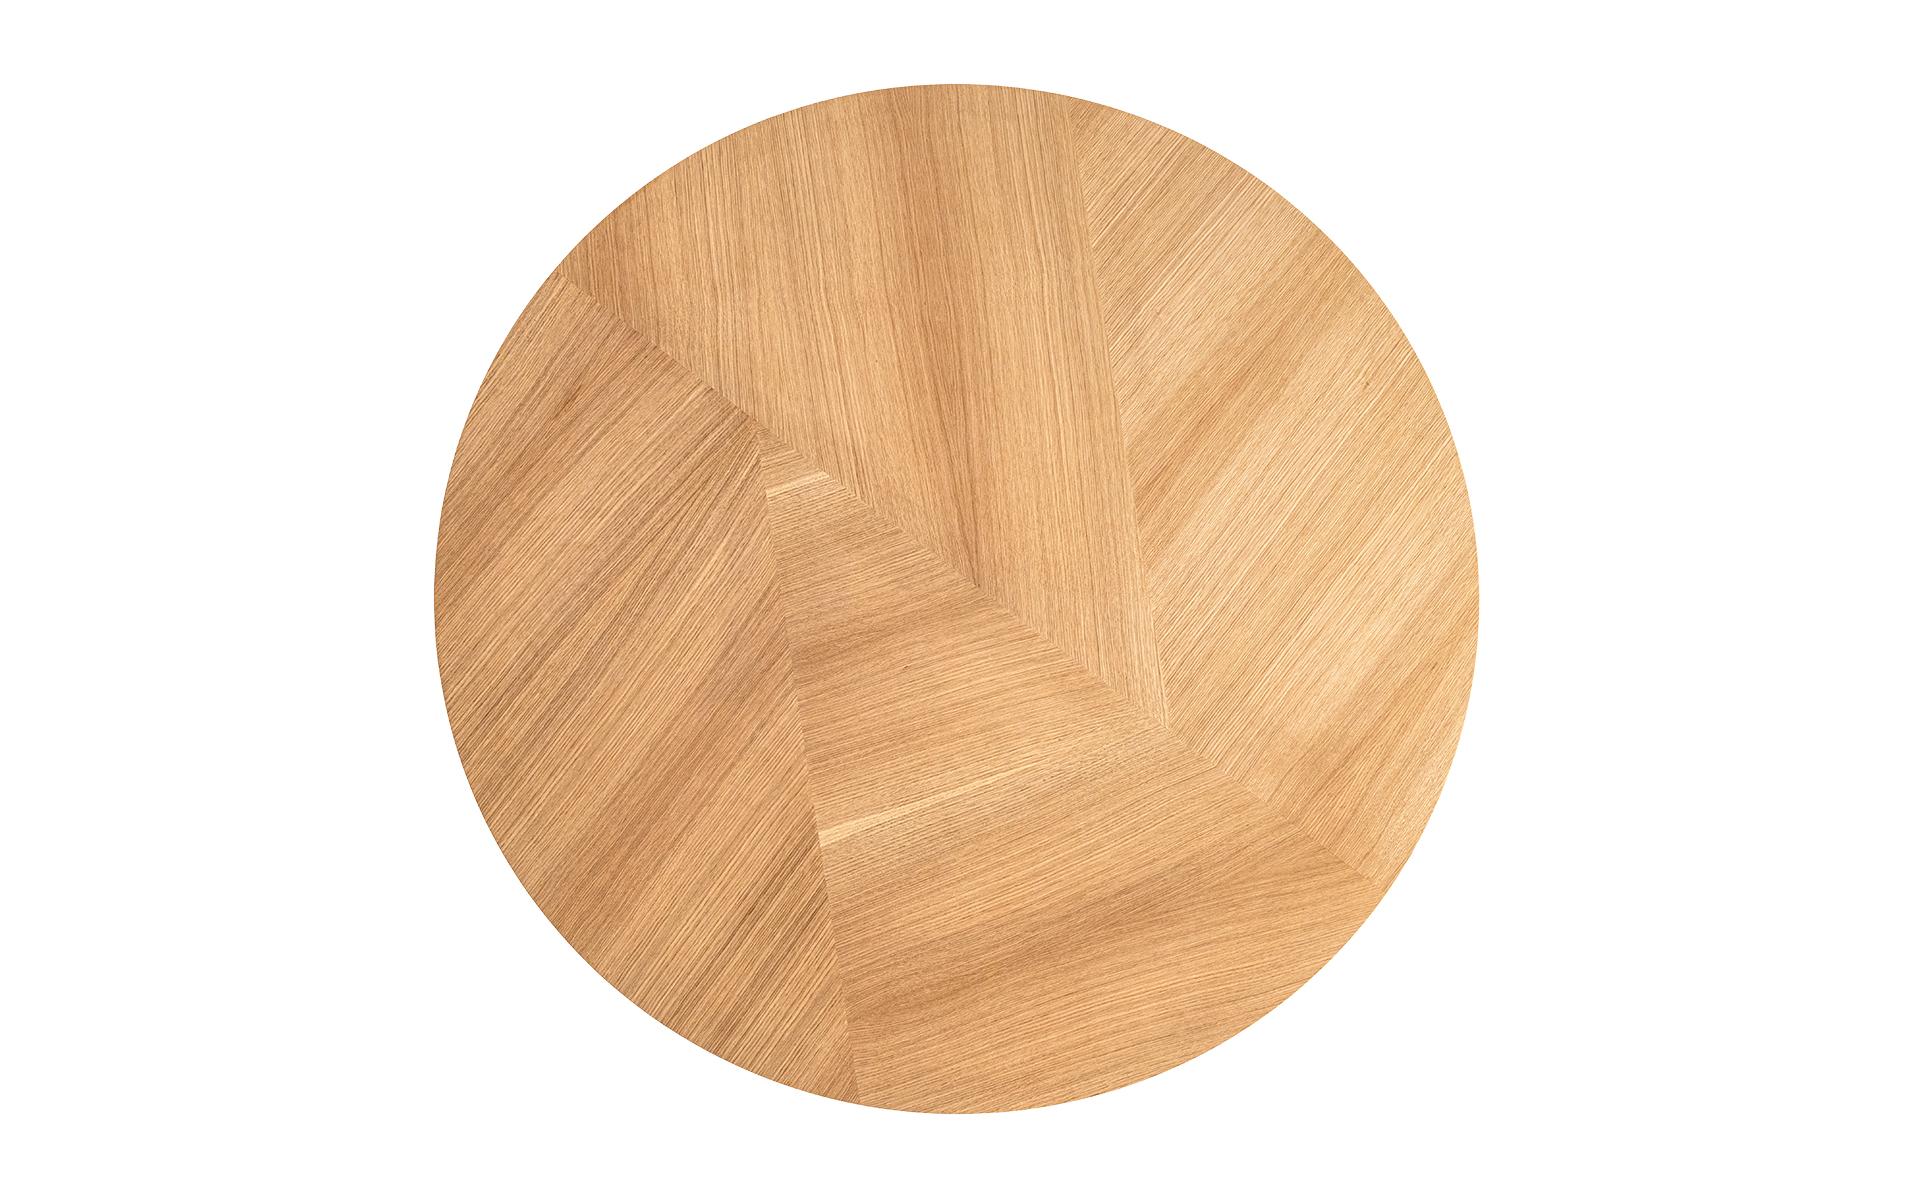 En apportant la chaleur du bois dans votre vie, Foldes Table accompagnera les moments agréables que vous passerez dans vos espaces de vie. Alors que les lignes fluides de la table créent une atmosphère moderne, l'accent en laiton combiné à l'aspect